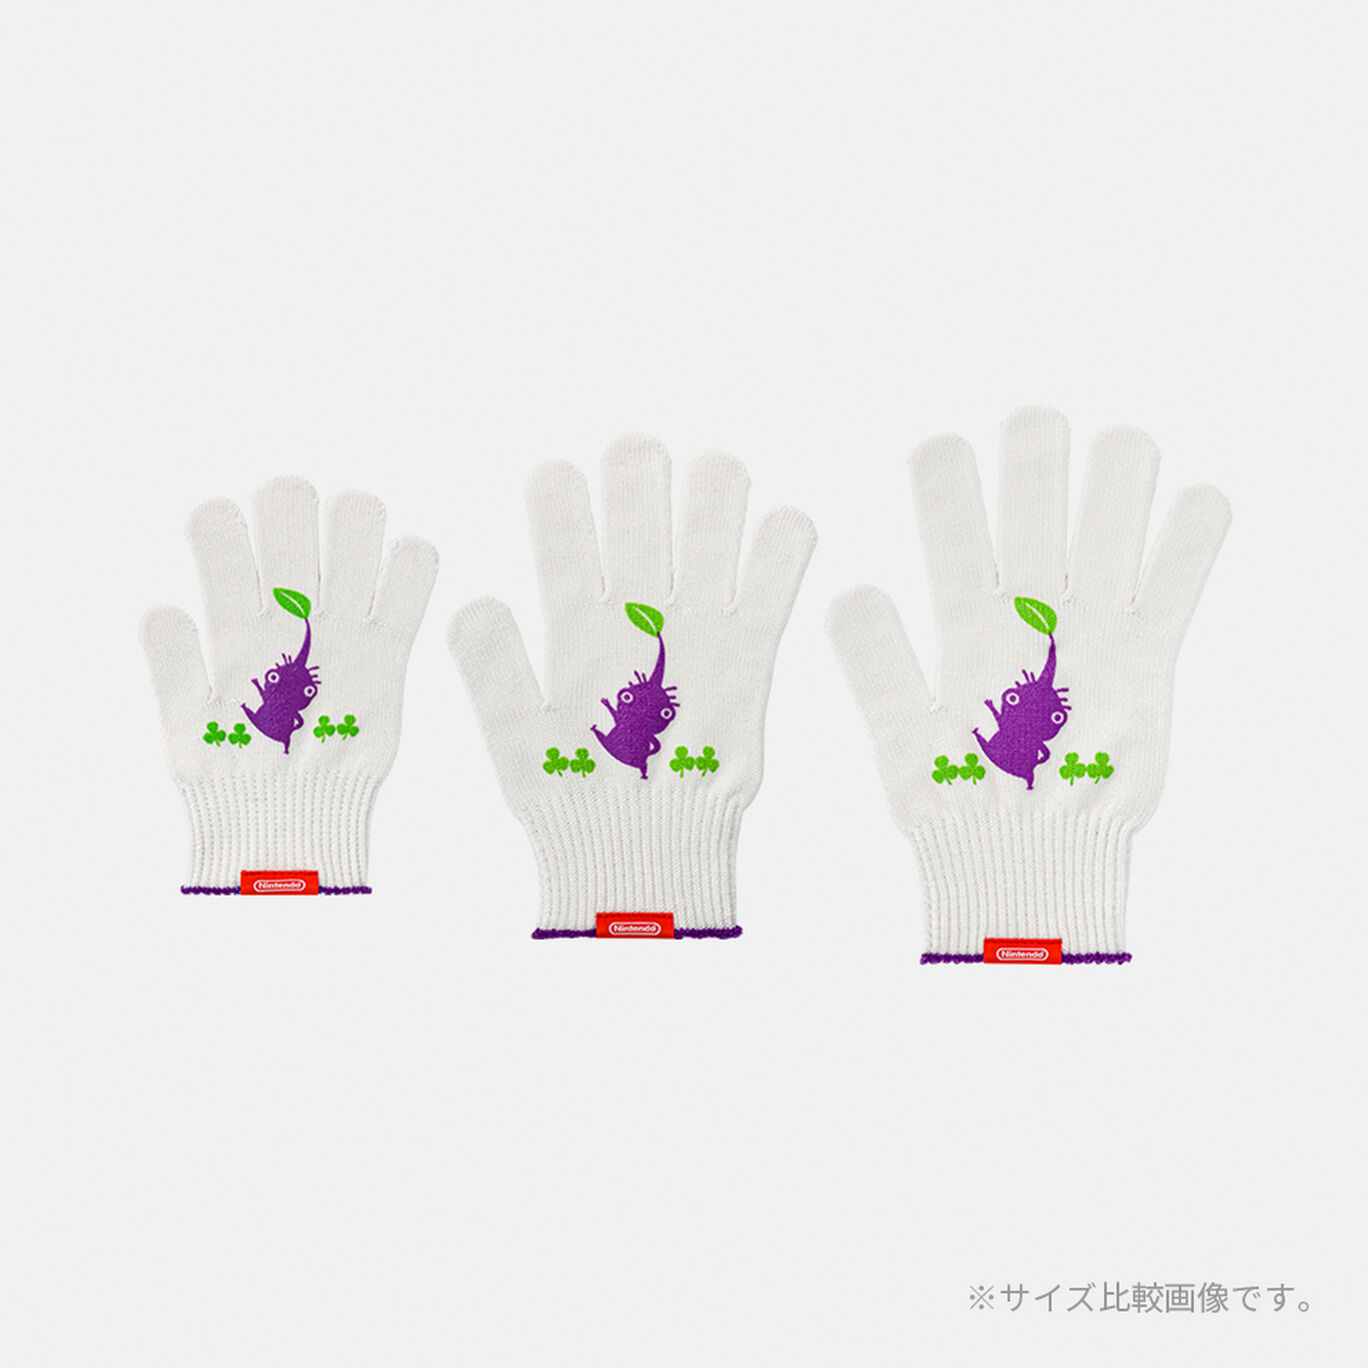 軍手 力持ちの紫ピクミン M PIKMIN【Nintendo TOKYO取り扱い商品】